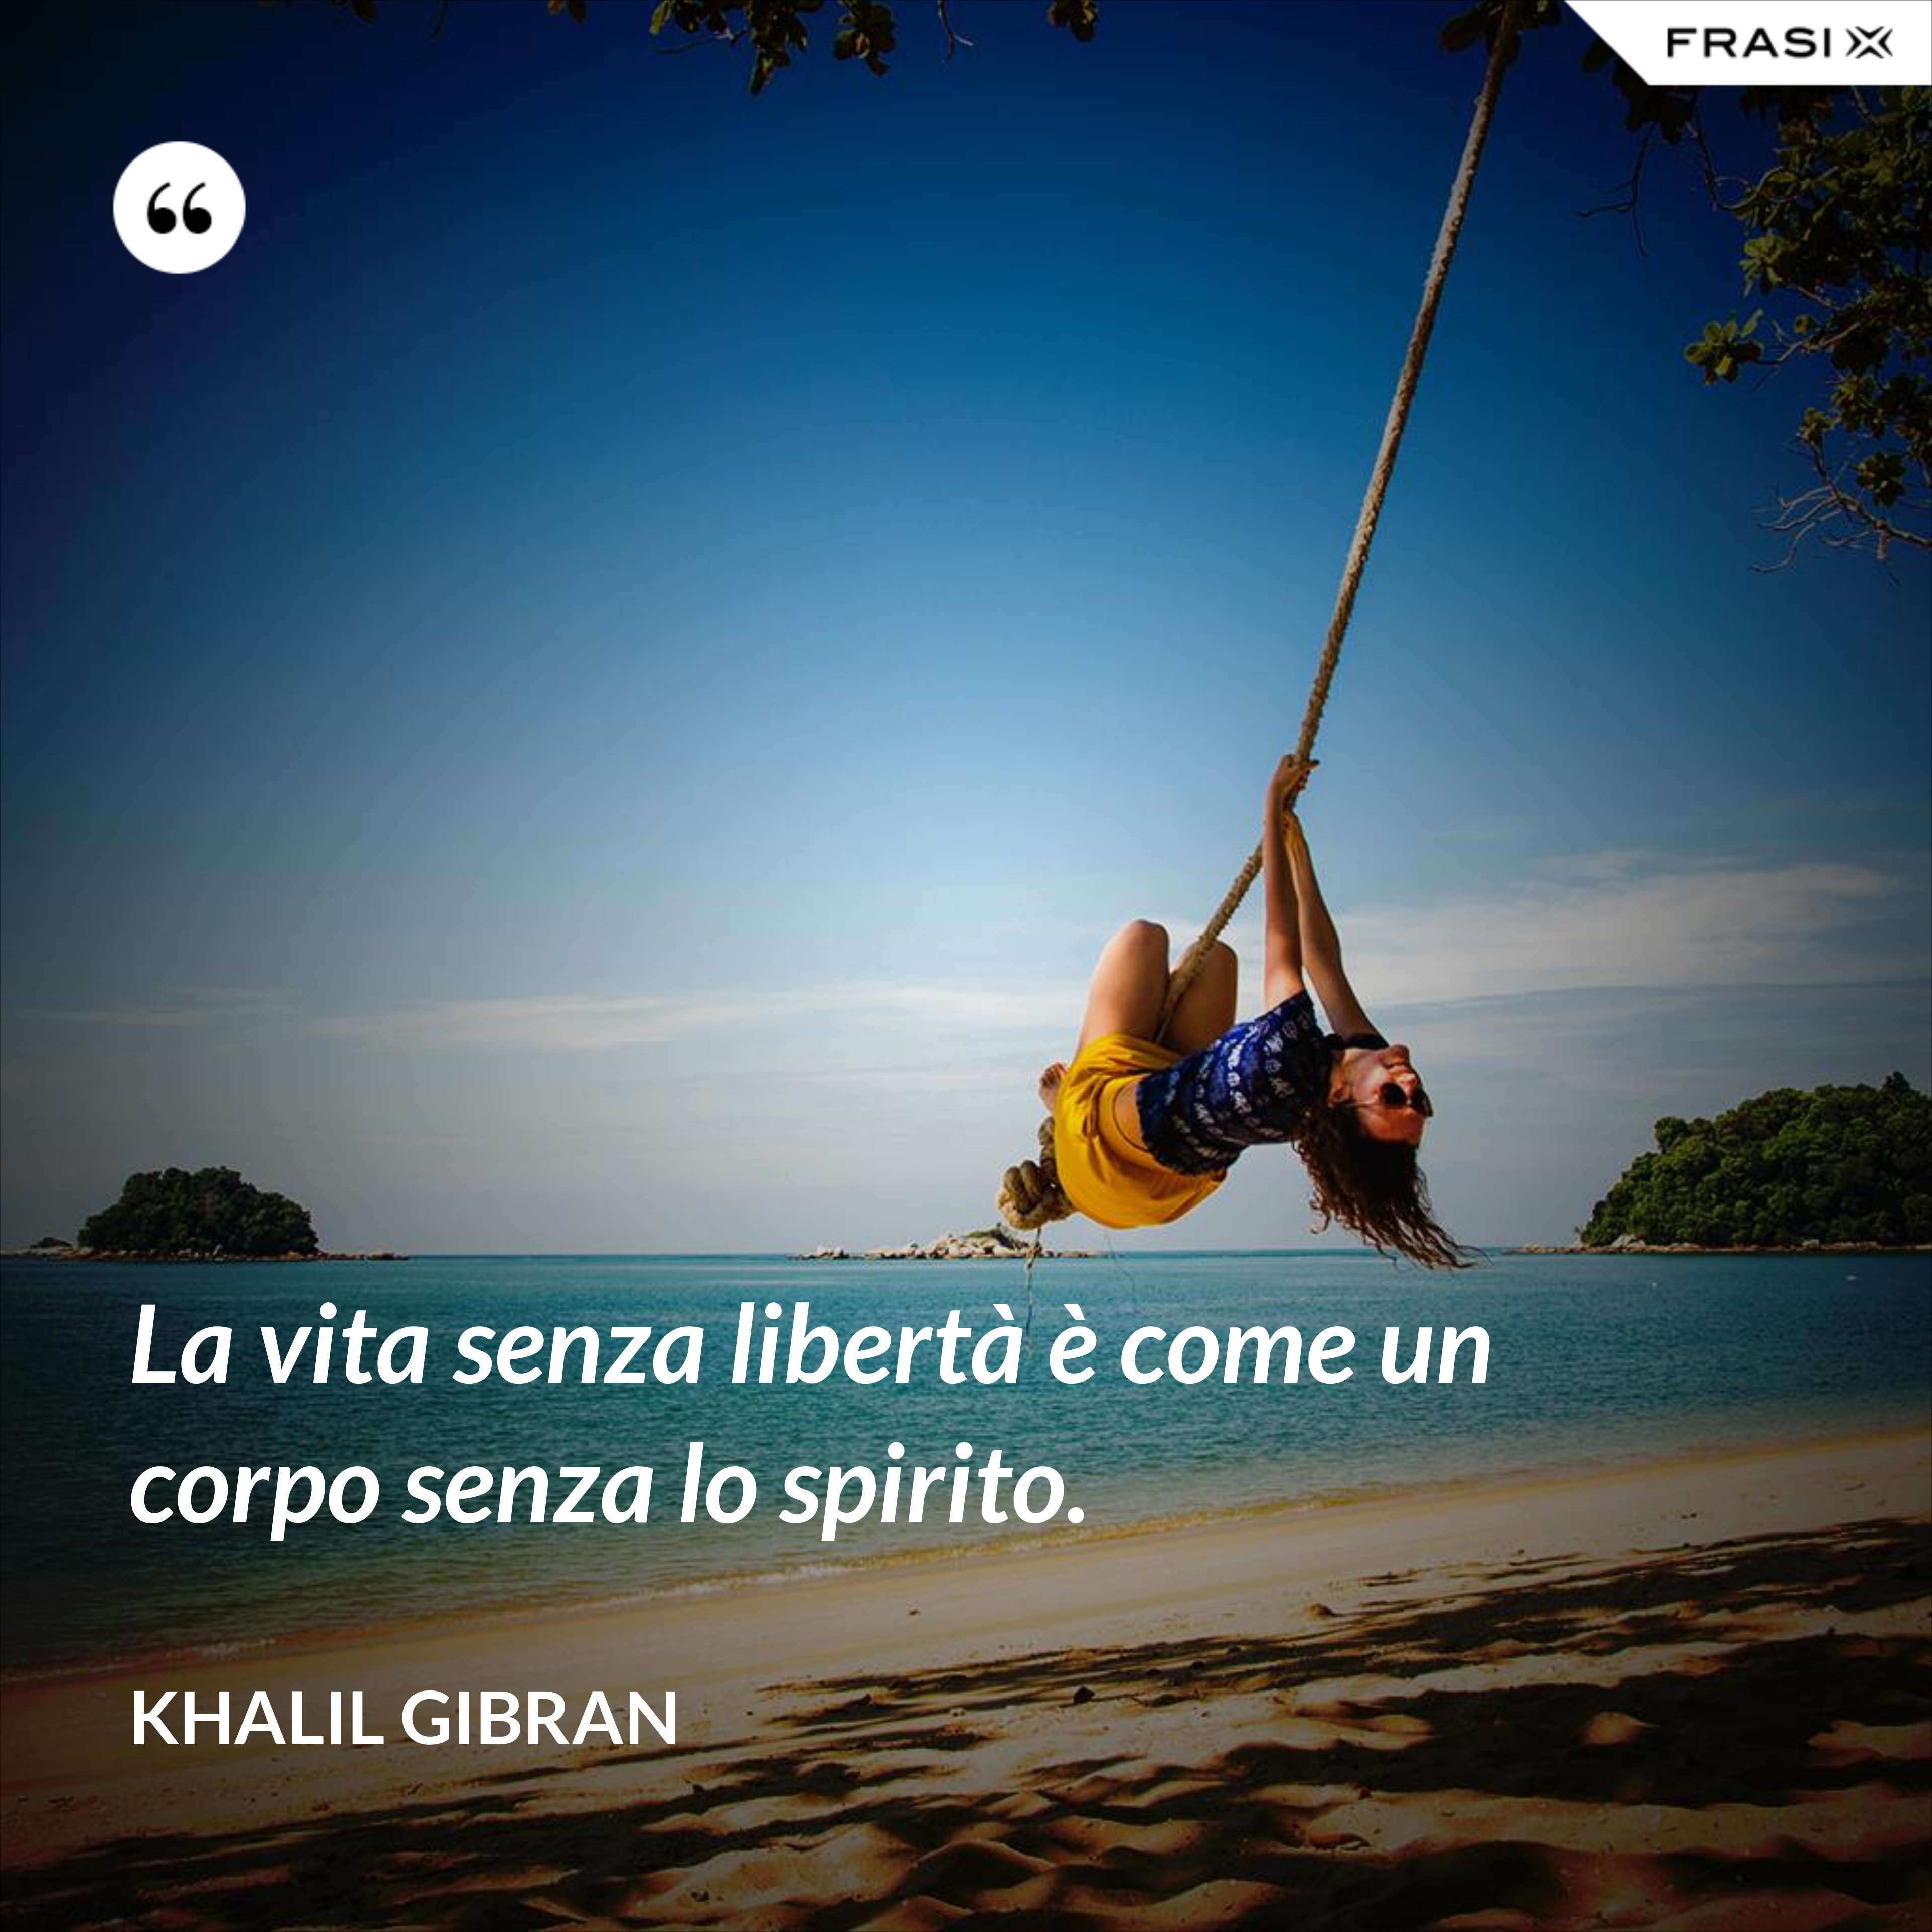 La vita senza libertà è come un corpo senza lo spirito. - Khalil Gibran